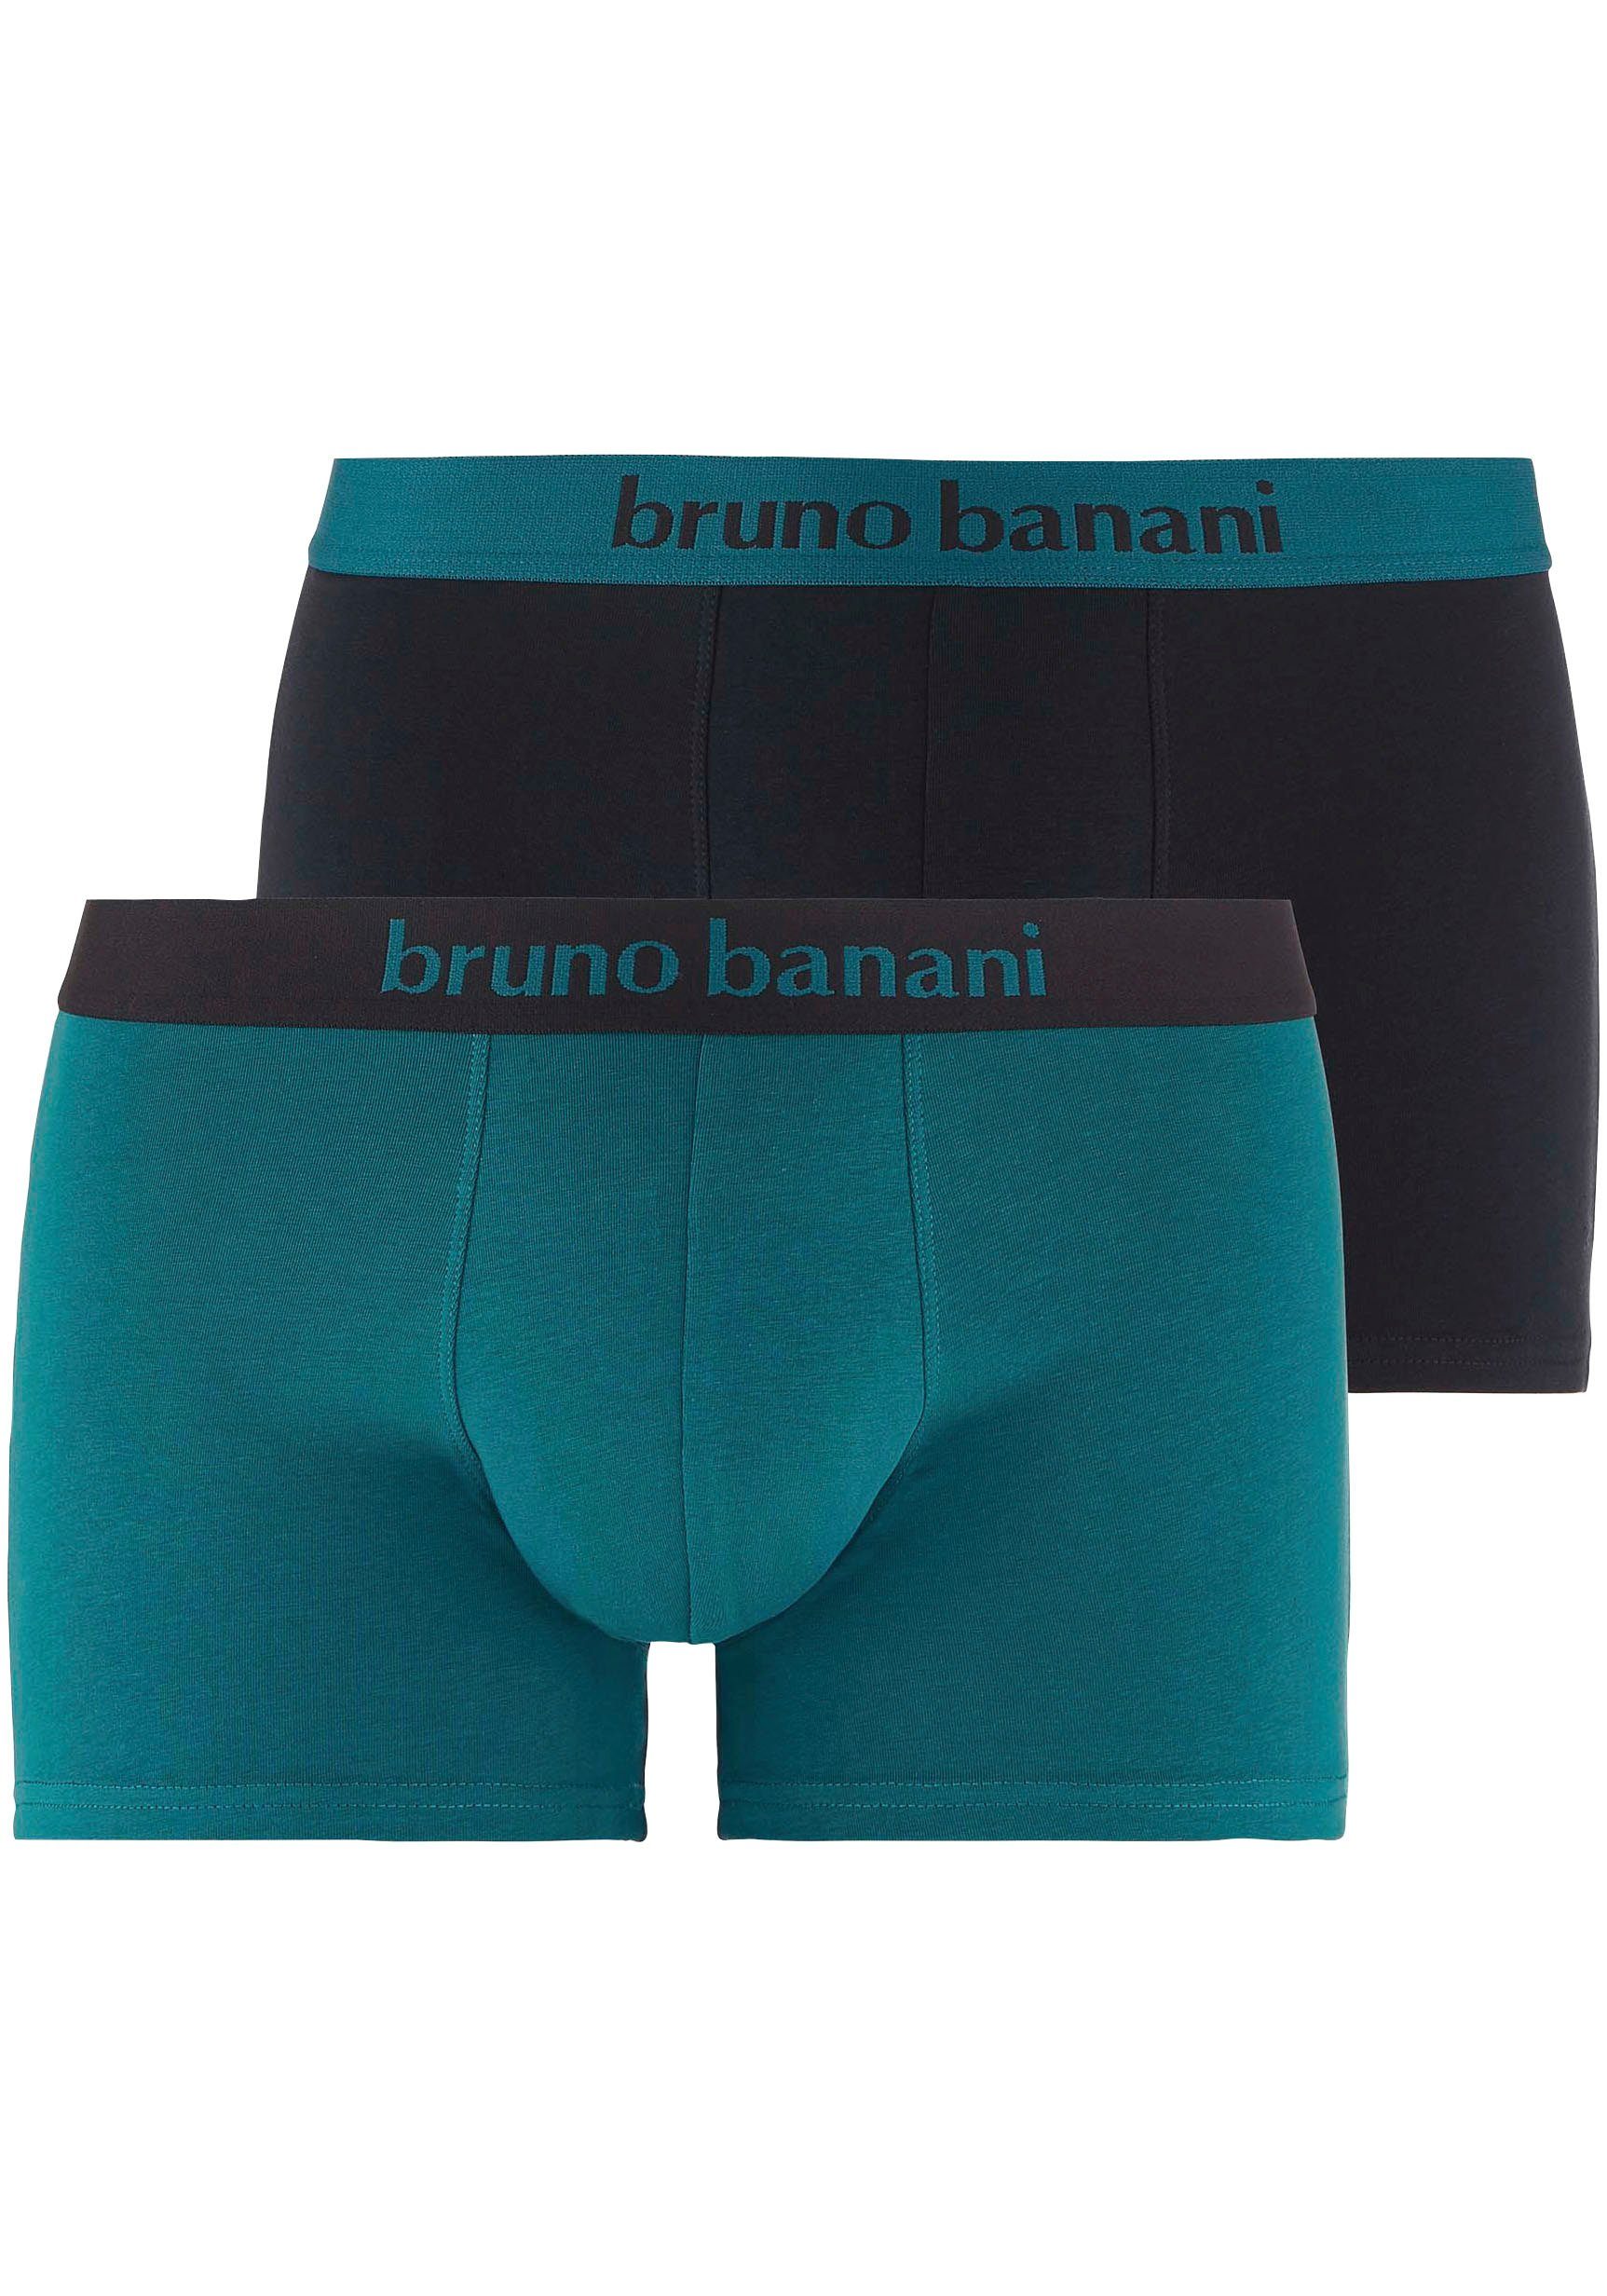 Bruno Banani Boxershorts für Herren online kaufen | OTTO